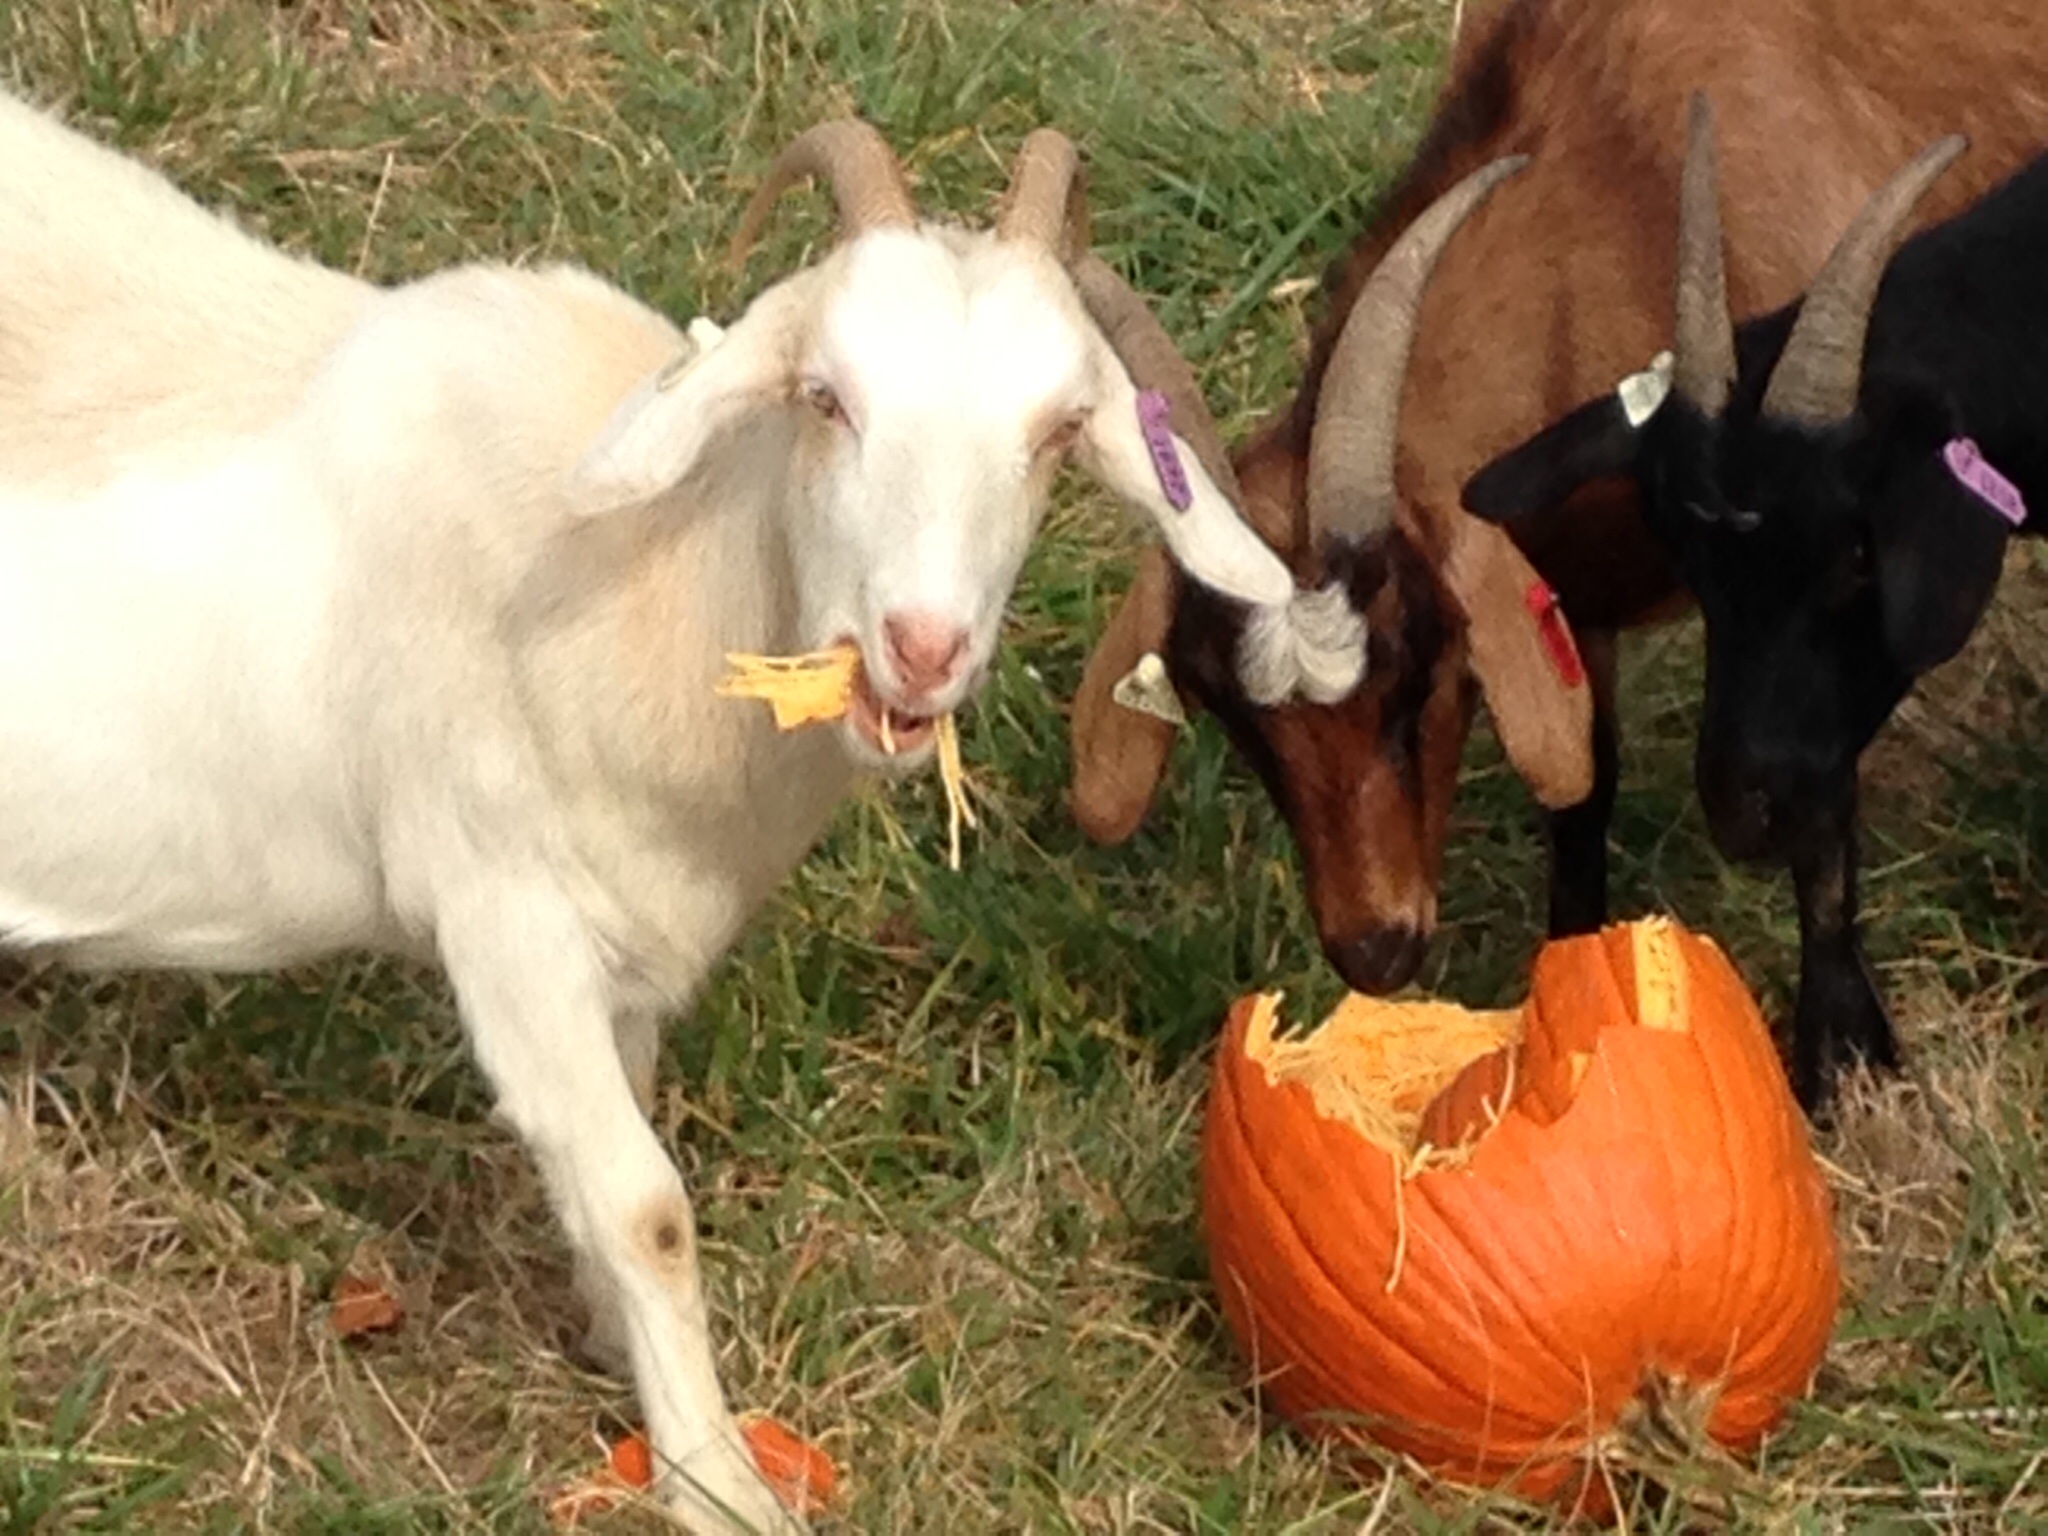 Goats love Halloween!